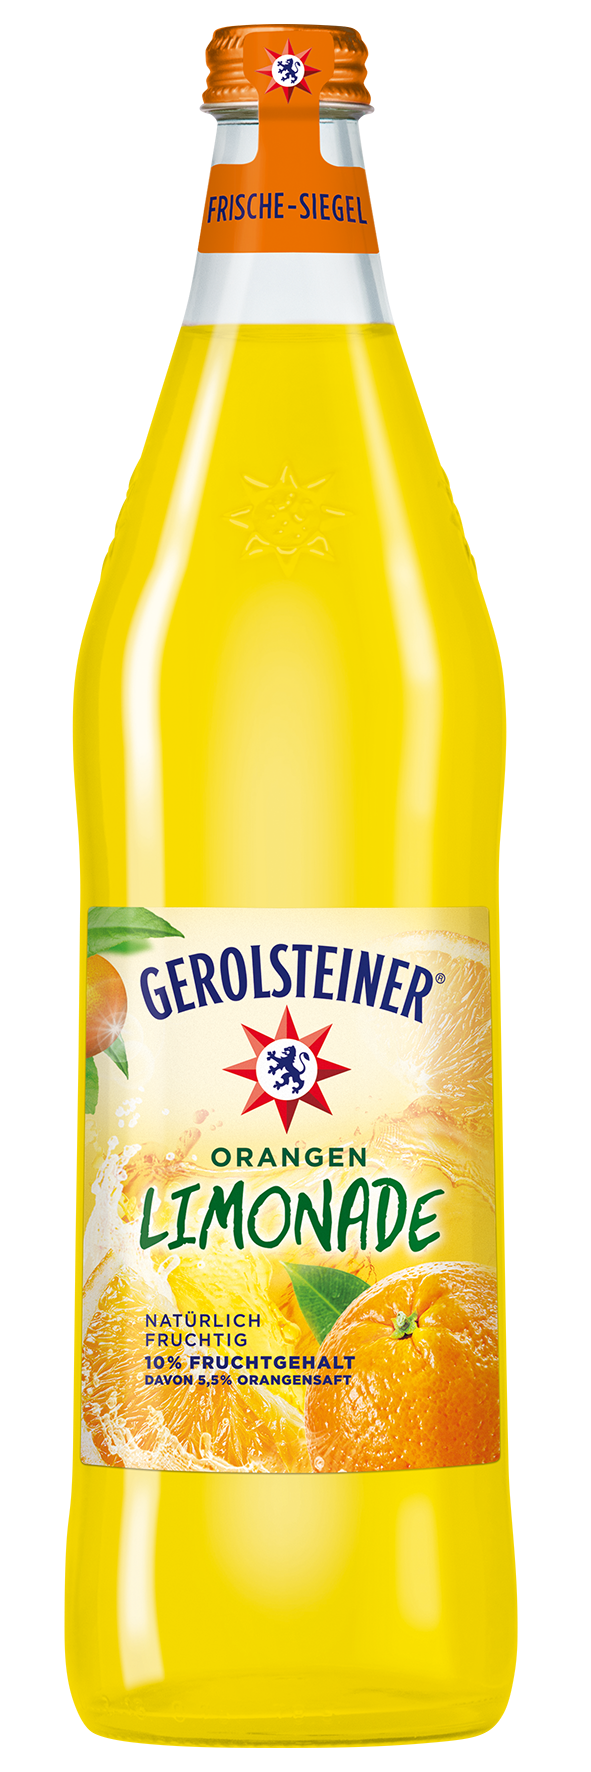 Gerolsteiner Limonade Orange 6x0,75l Glas